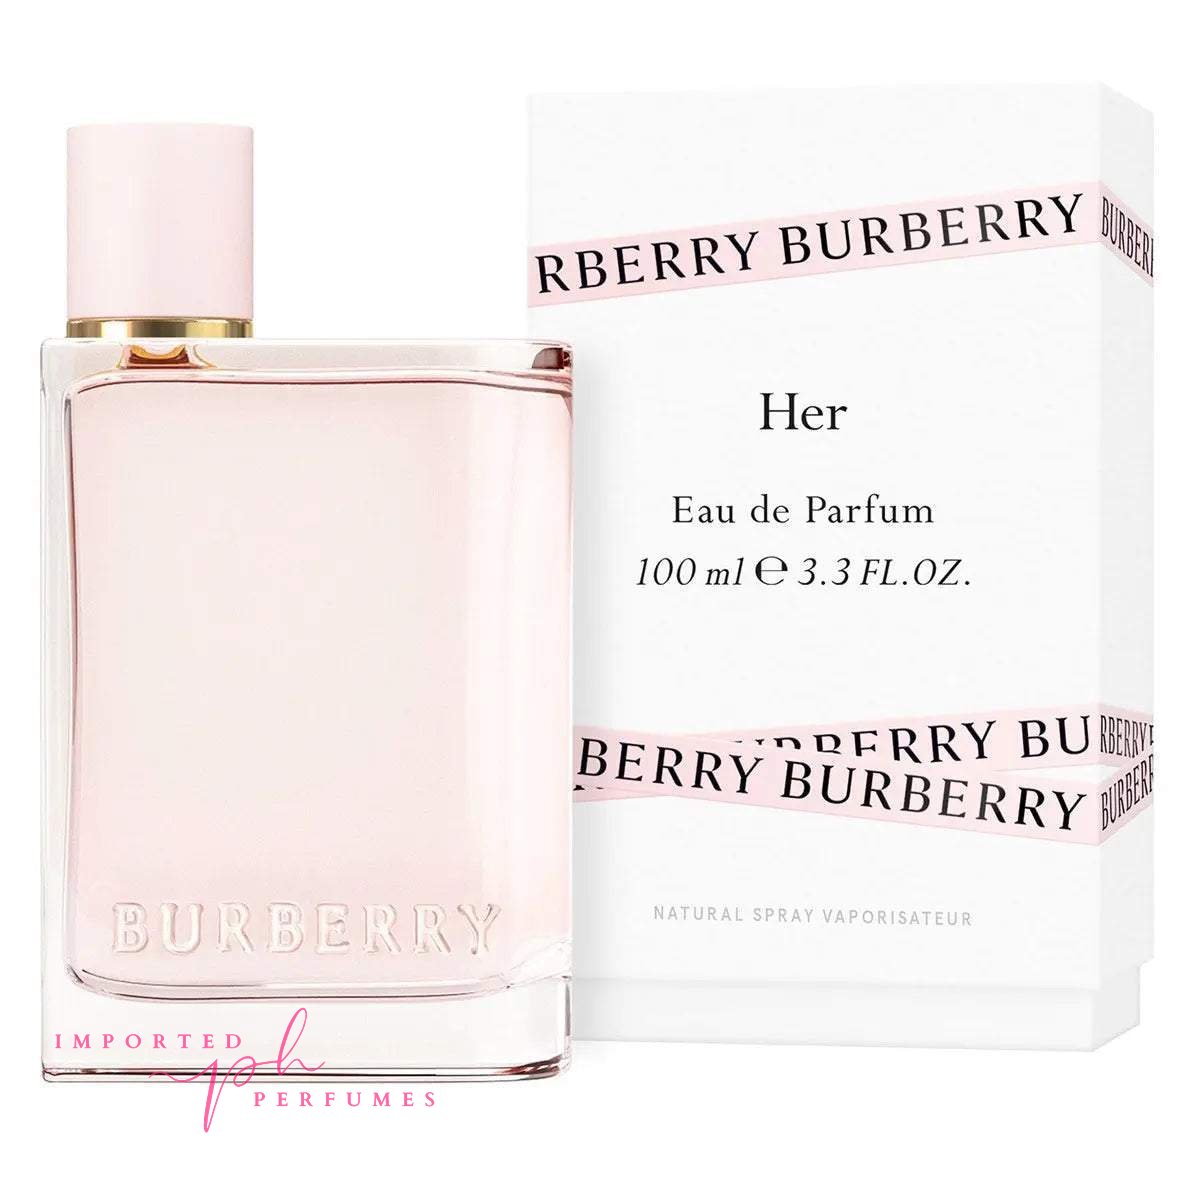 Burberry Her Eau de Parfum 100ml For Women-Imported Perfumes Co-Burberry,burberry her,for women,her,women,women perfume